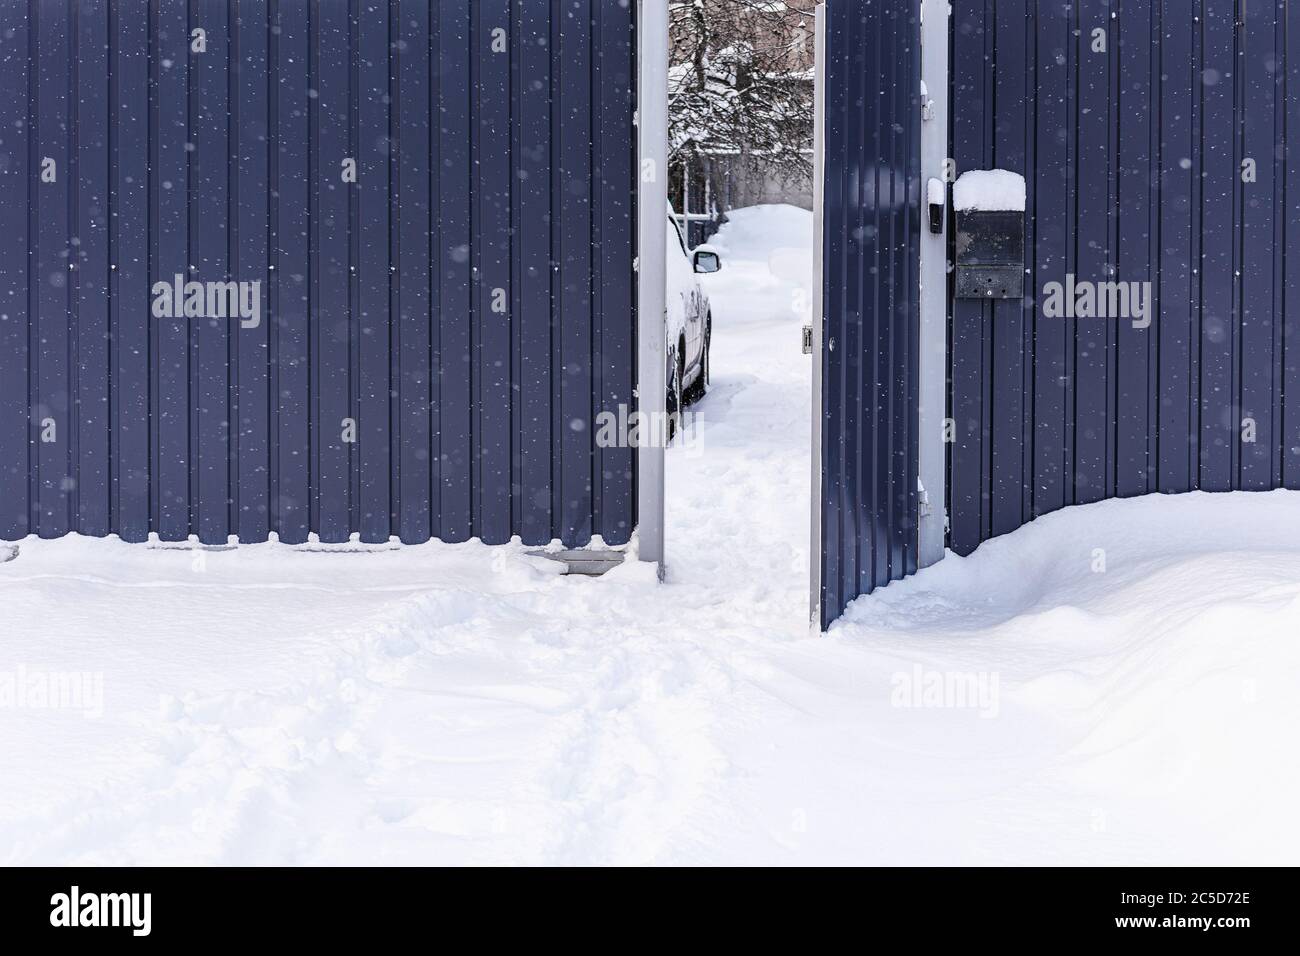 Fußabdrücke im Schnee. Schneeverwehungen. Winter, Zaun, Schnee an frostigen Tagen. Öffnen Sie das Tor im Zaun an verschneiten Tagen. Zaun im Schnee. Stockfoto